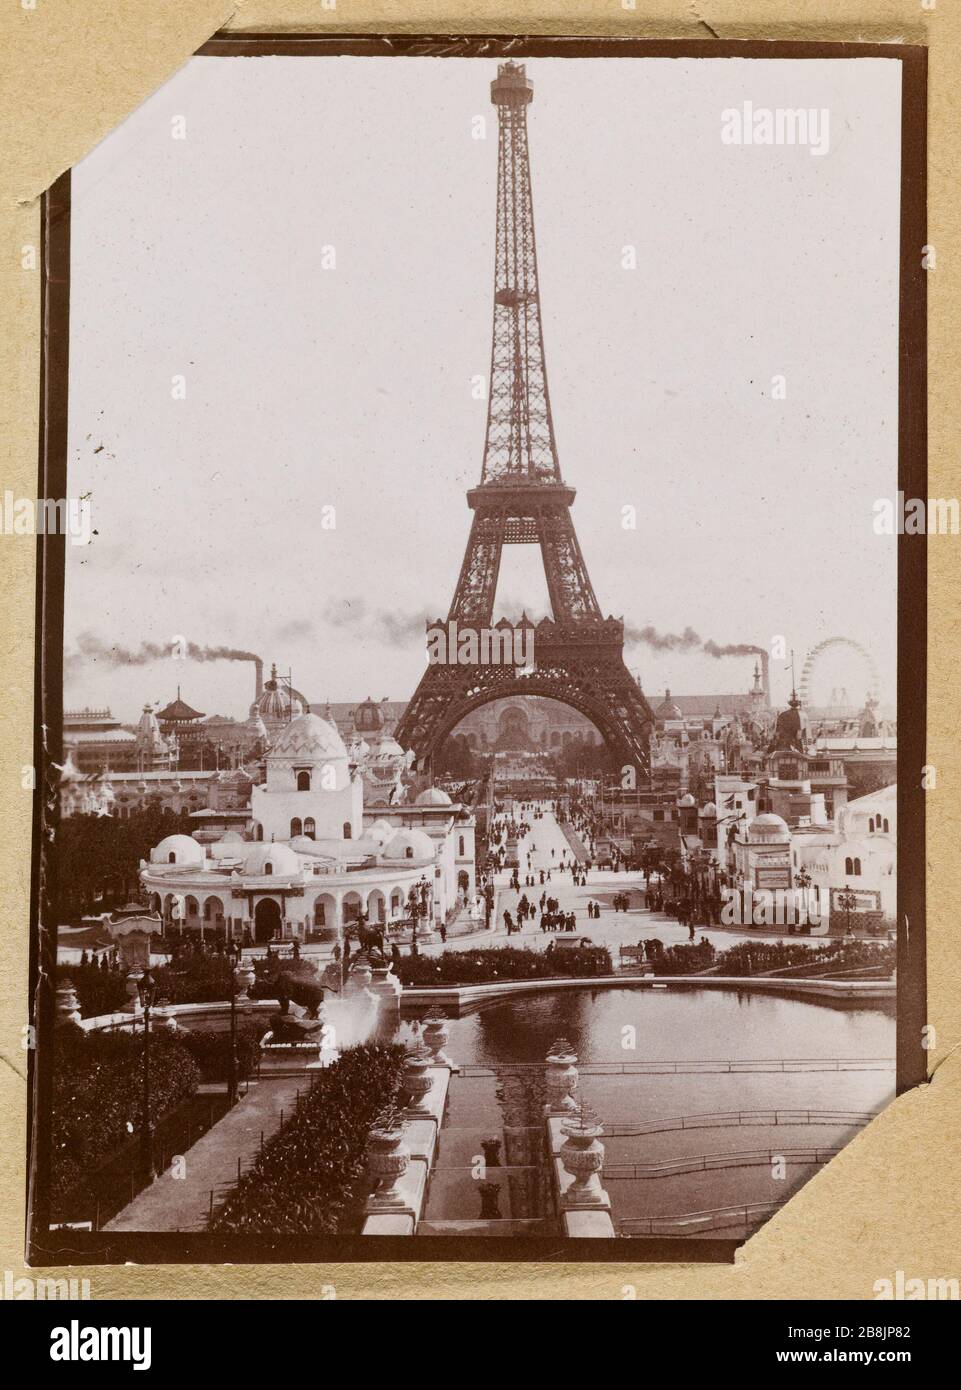 Album del World Expo 1900 [Torre Eiffel] Anonyme. Album de l'exposition universelle de 1900. Tour Eiffel. 1900. Musée des Beaux-Arts de la Ville de Paris, Petit Palais. Foto Stock